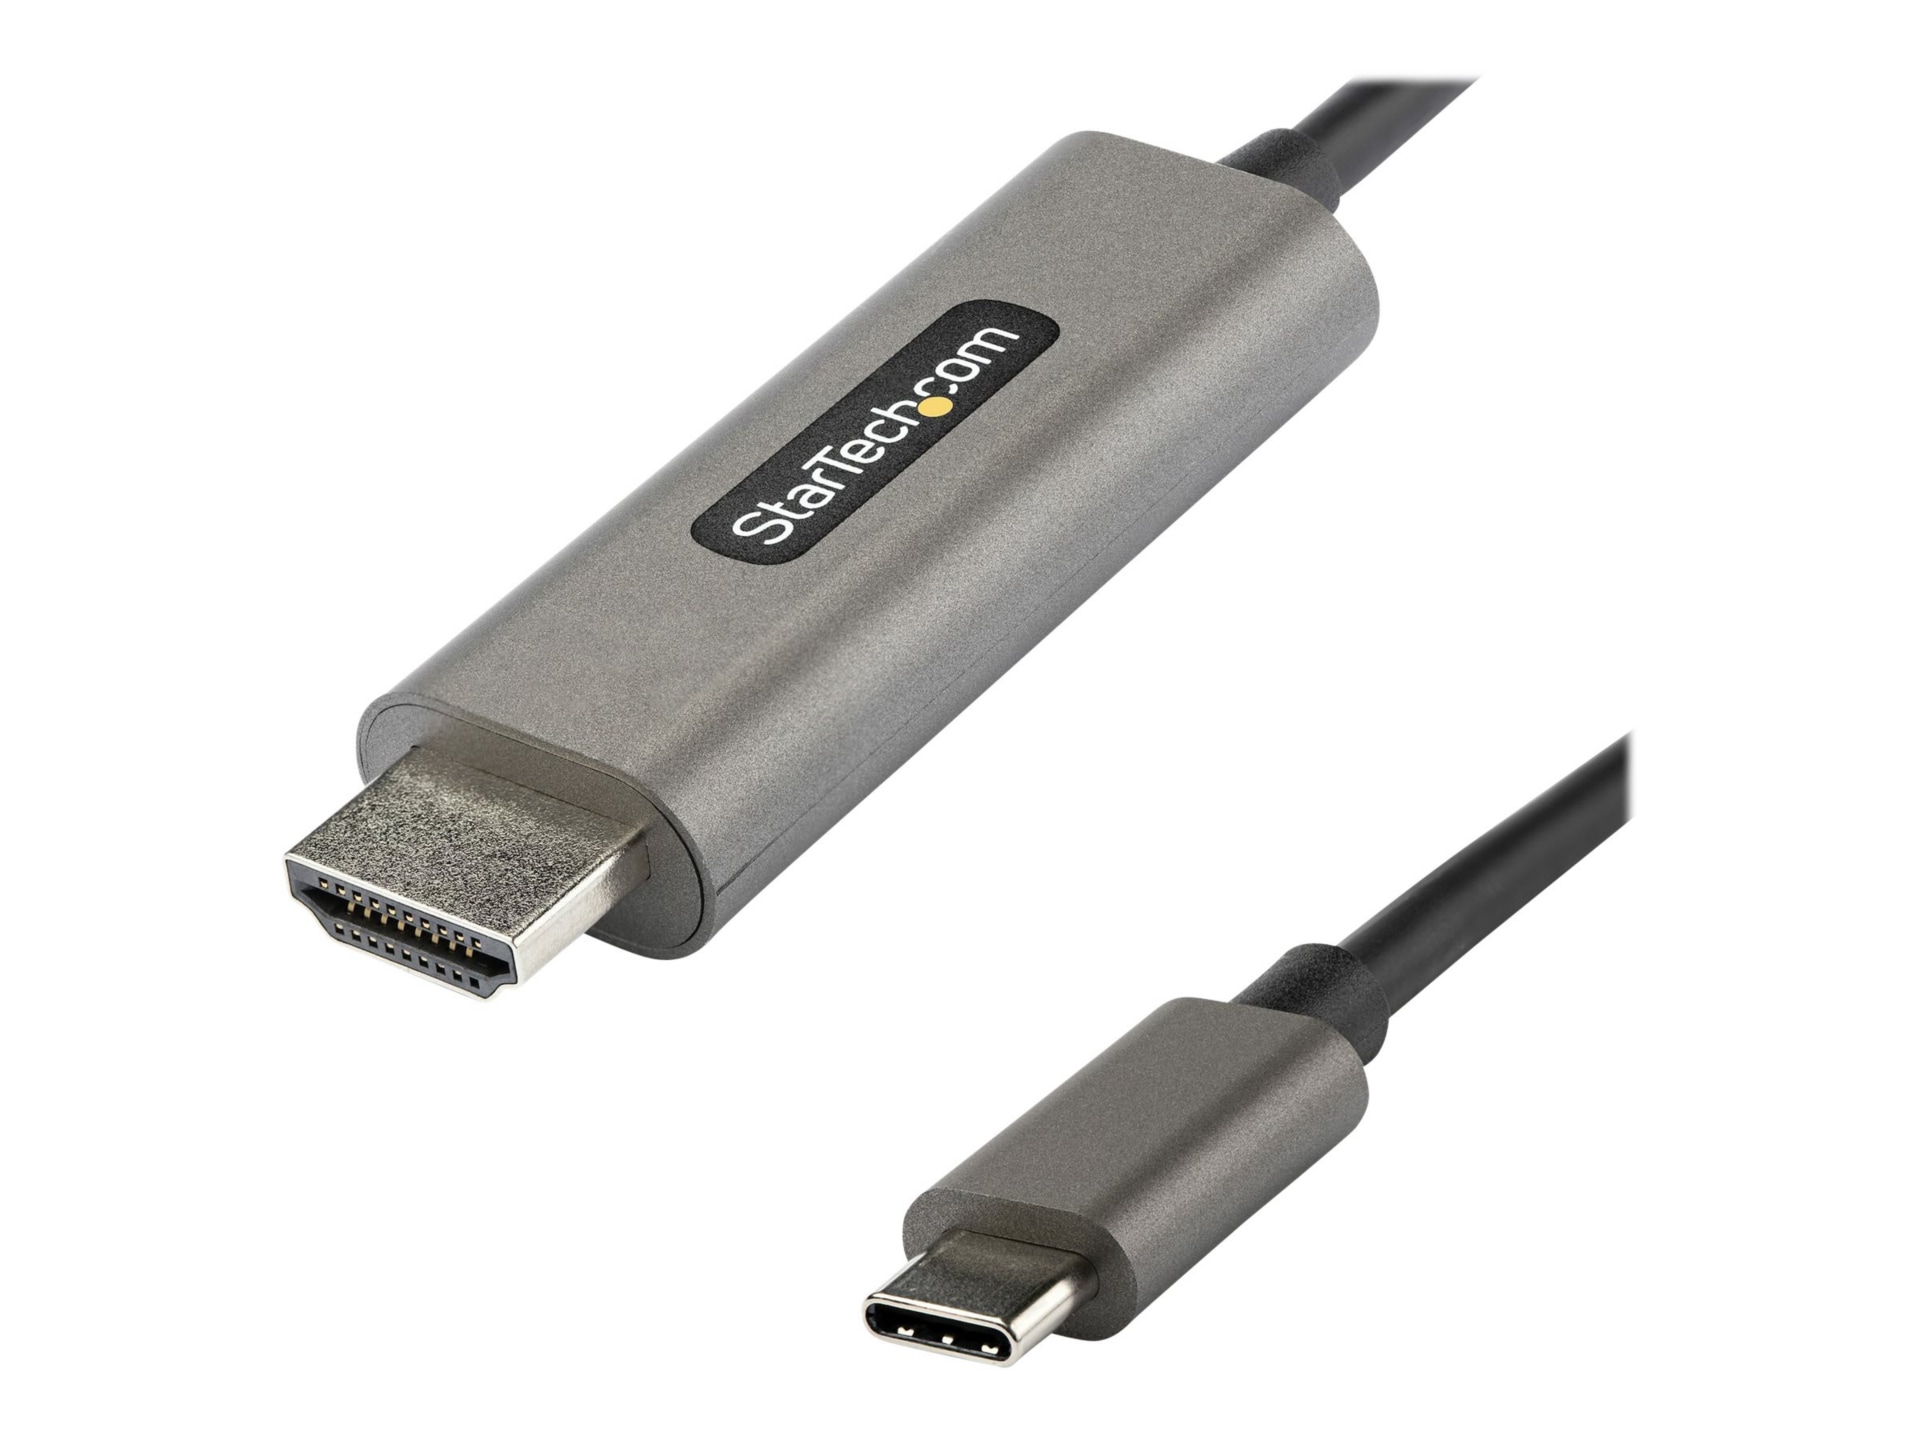 Adaptateur USB C vers HDMI - Vidéo 4K 60Hz, HDR10 - Adaptateur Dongle USB  vers HDMI 2.0b - USB Type-C DP Alt Mode vers Écrans/Affichage/TV HDMI 